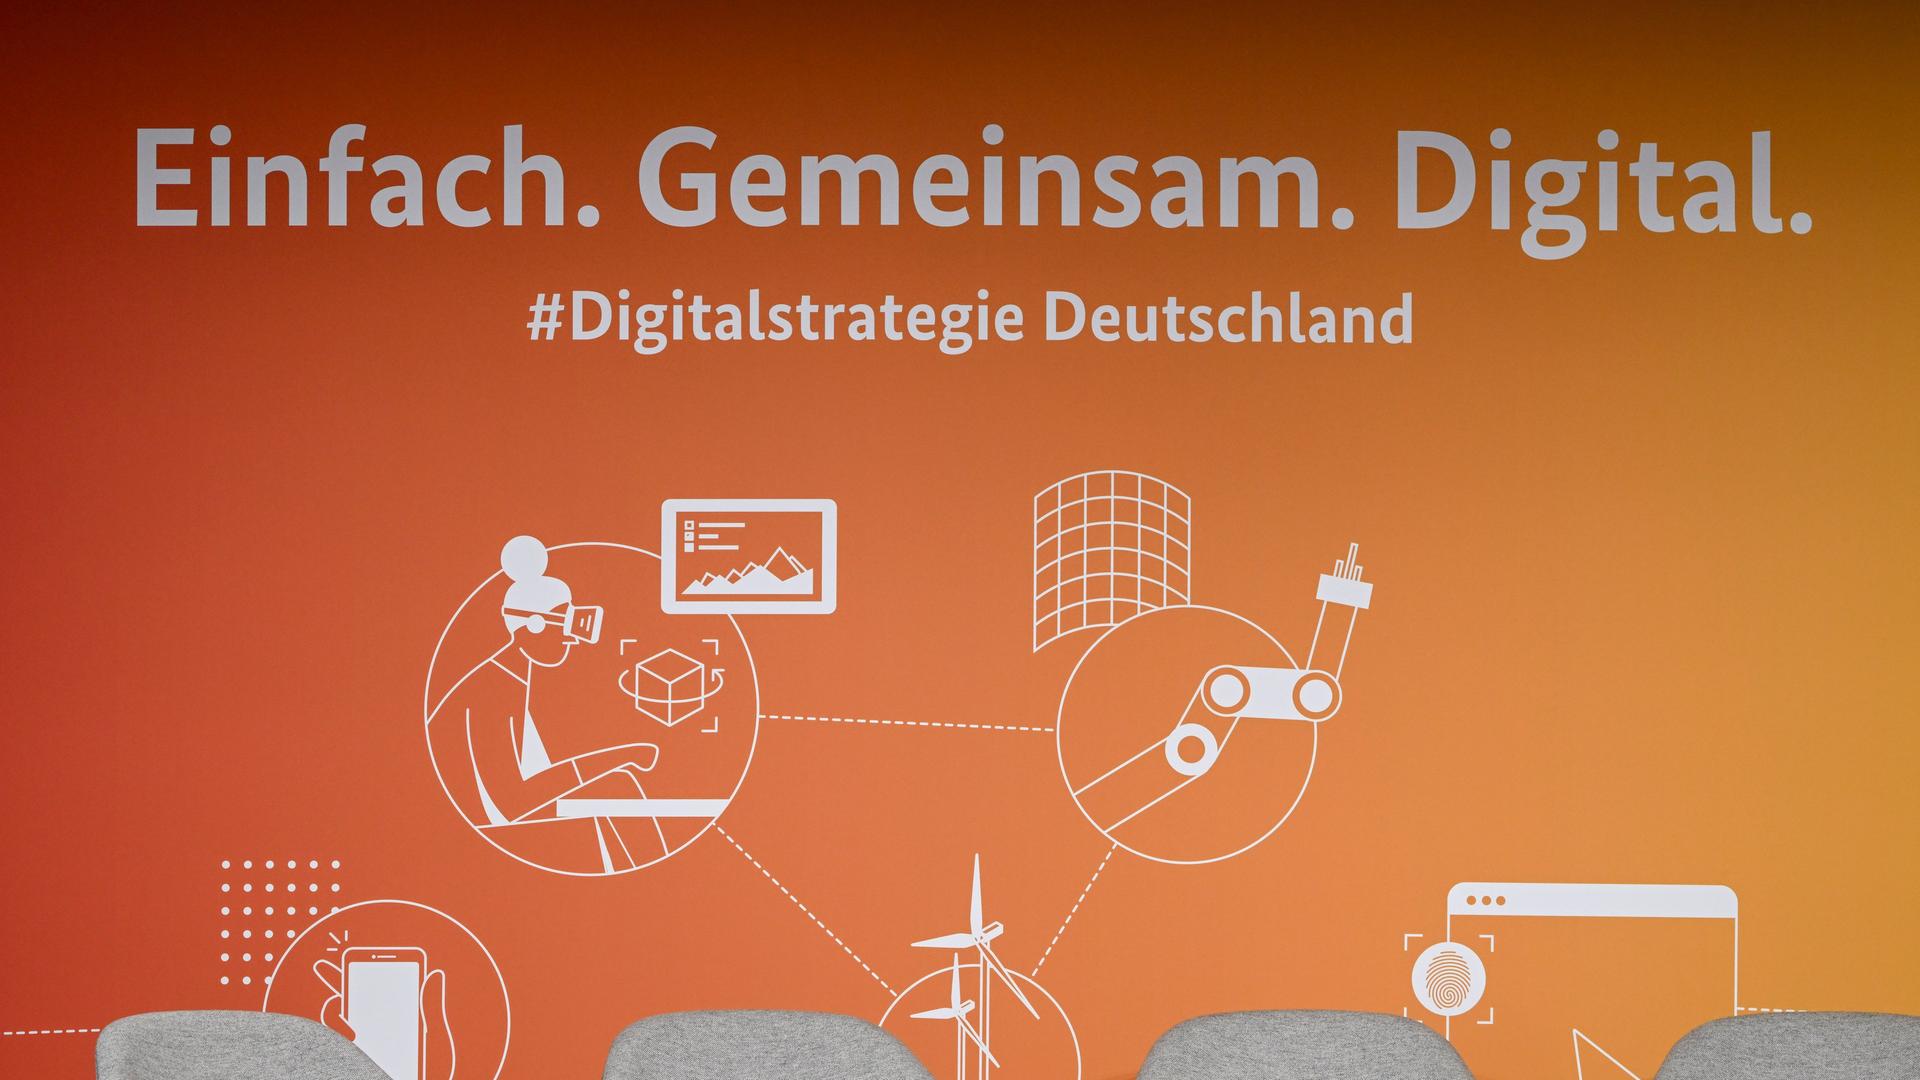 Logos für die Digitalstrategie Deutschland prangen an einer orangenen Wand. Im Vordergrund stehen leere graue Stühle. 